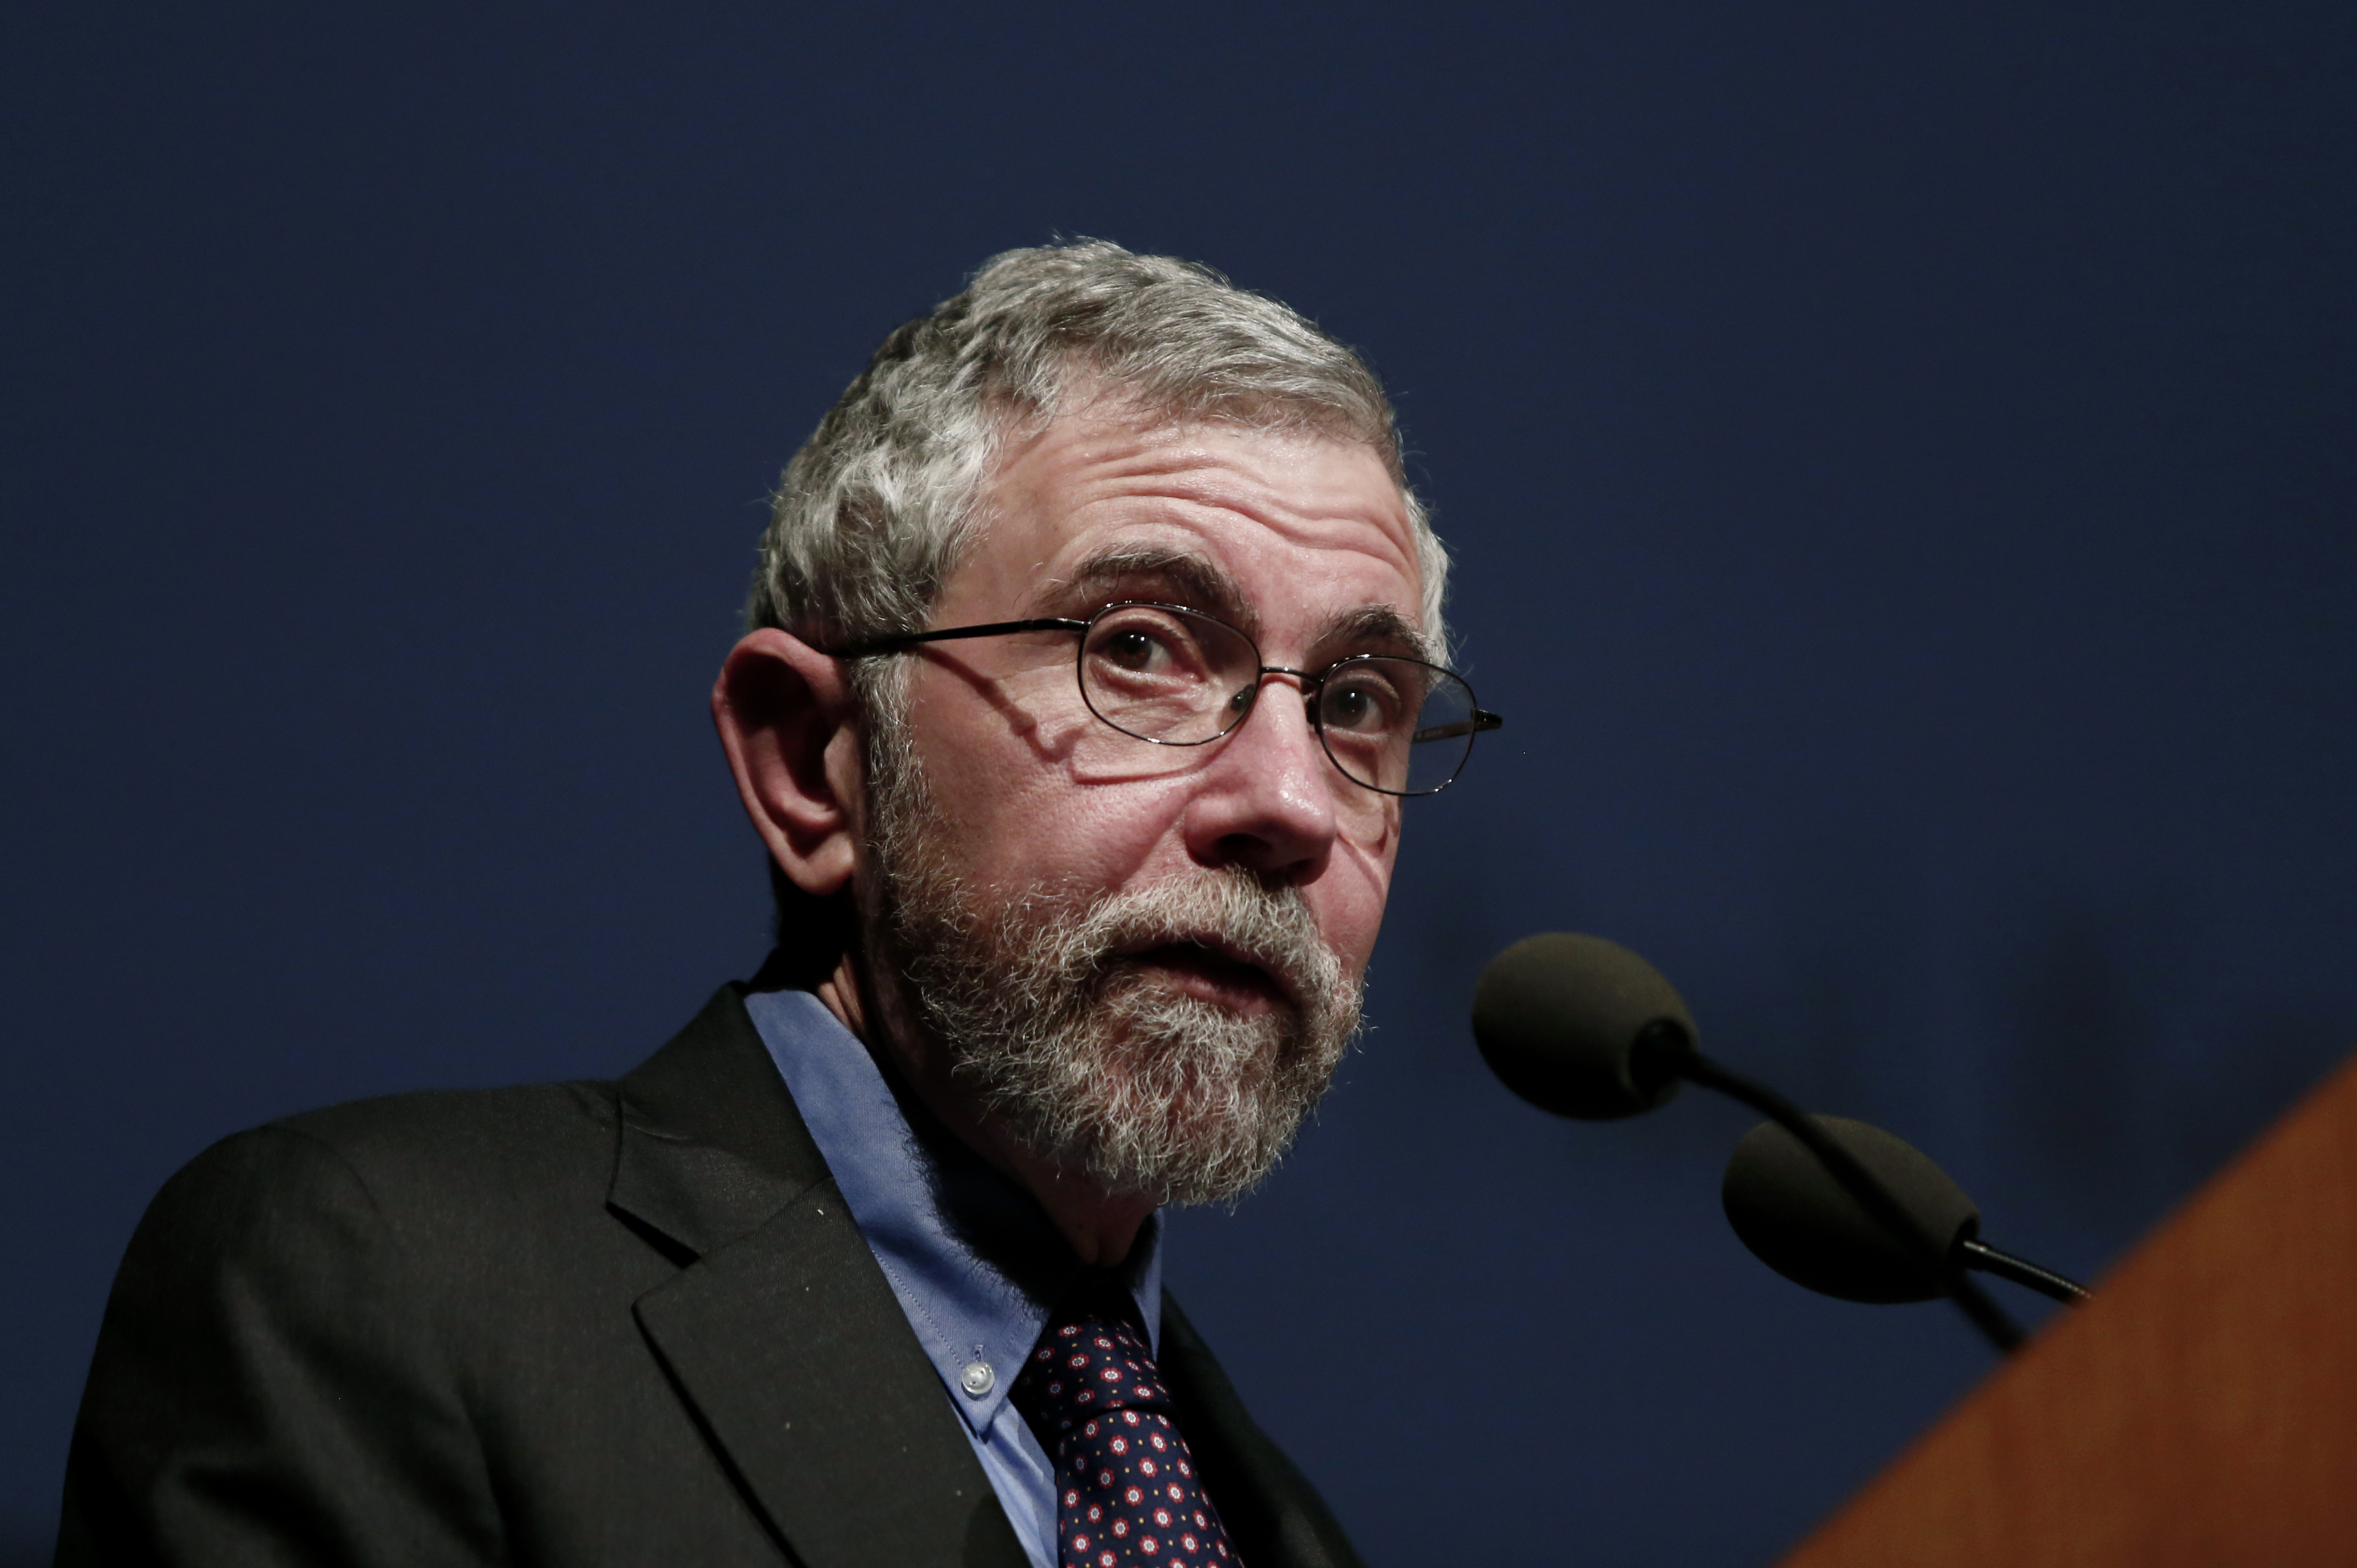 Magyarország jut eszébe Paul Krugmannak, ha arra gondol, hogy mehetnek rossz irányba a dolgok Trump elnöksége alatt